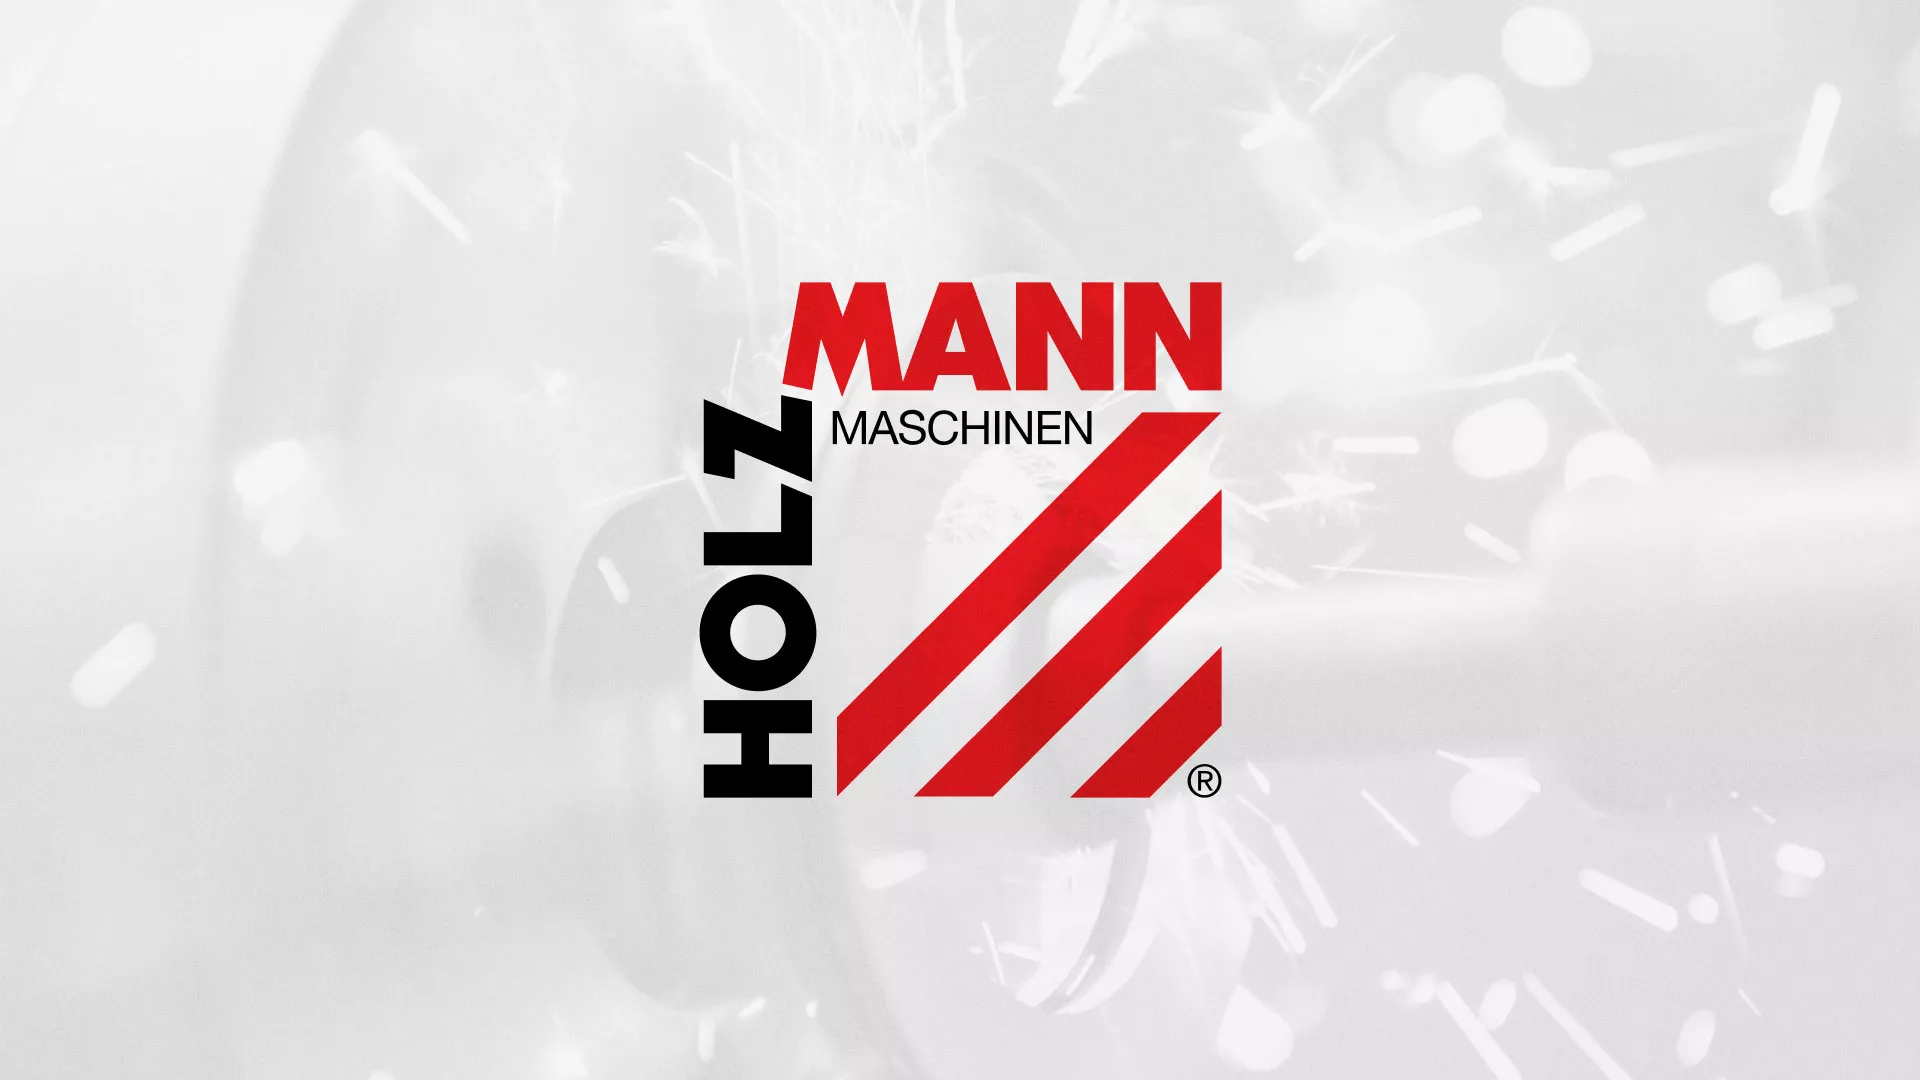 Создание сайта компании «HOLZMANN Maschinen GmbH» в Орехово-Зуево